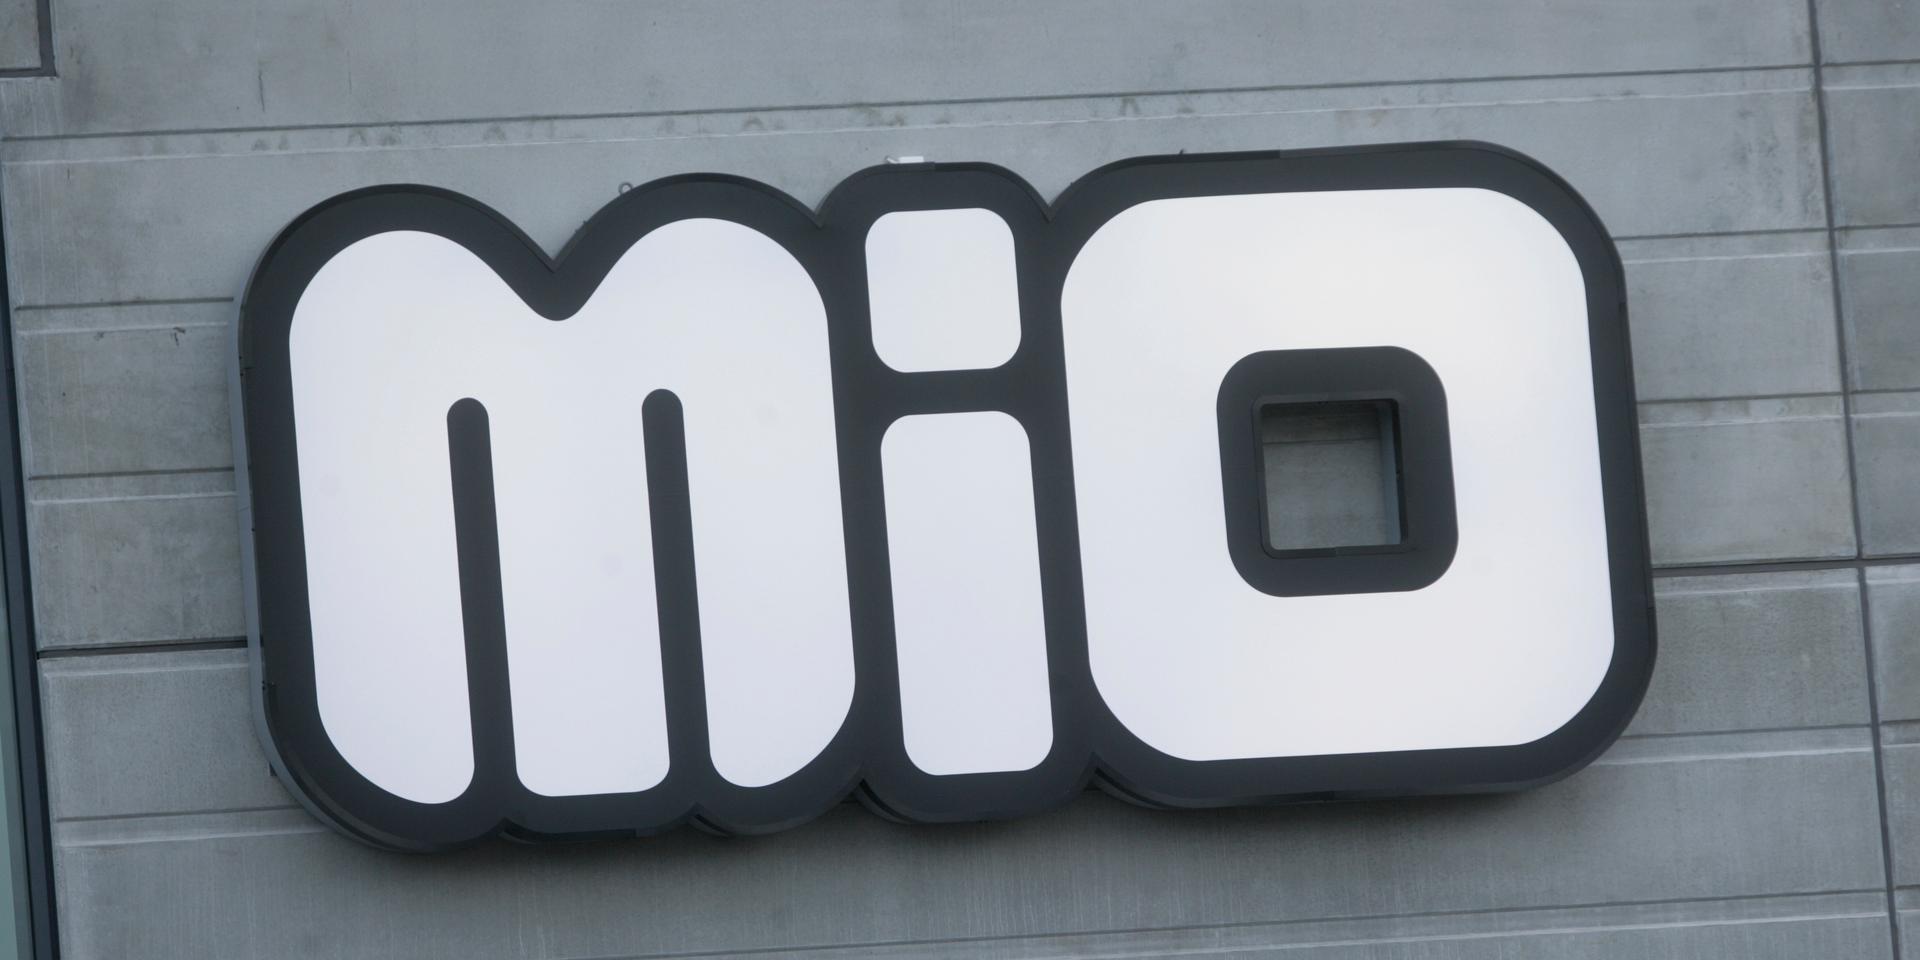 Möbelkedjan Mio stäms efter anklagelser om upphovsrättsintrång.